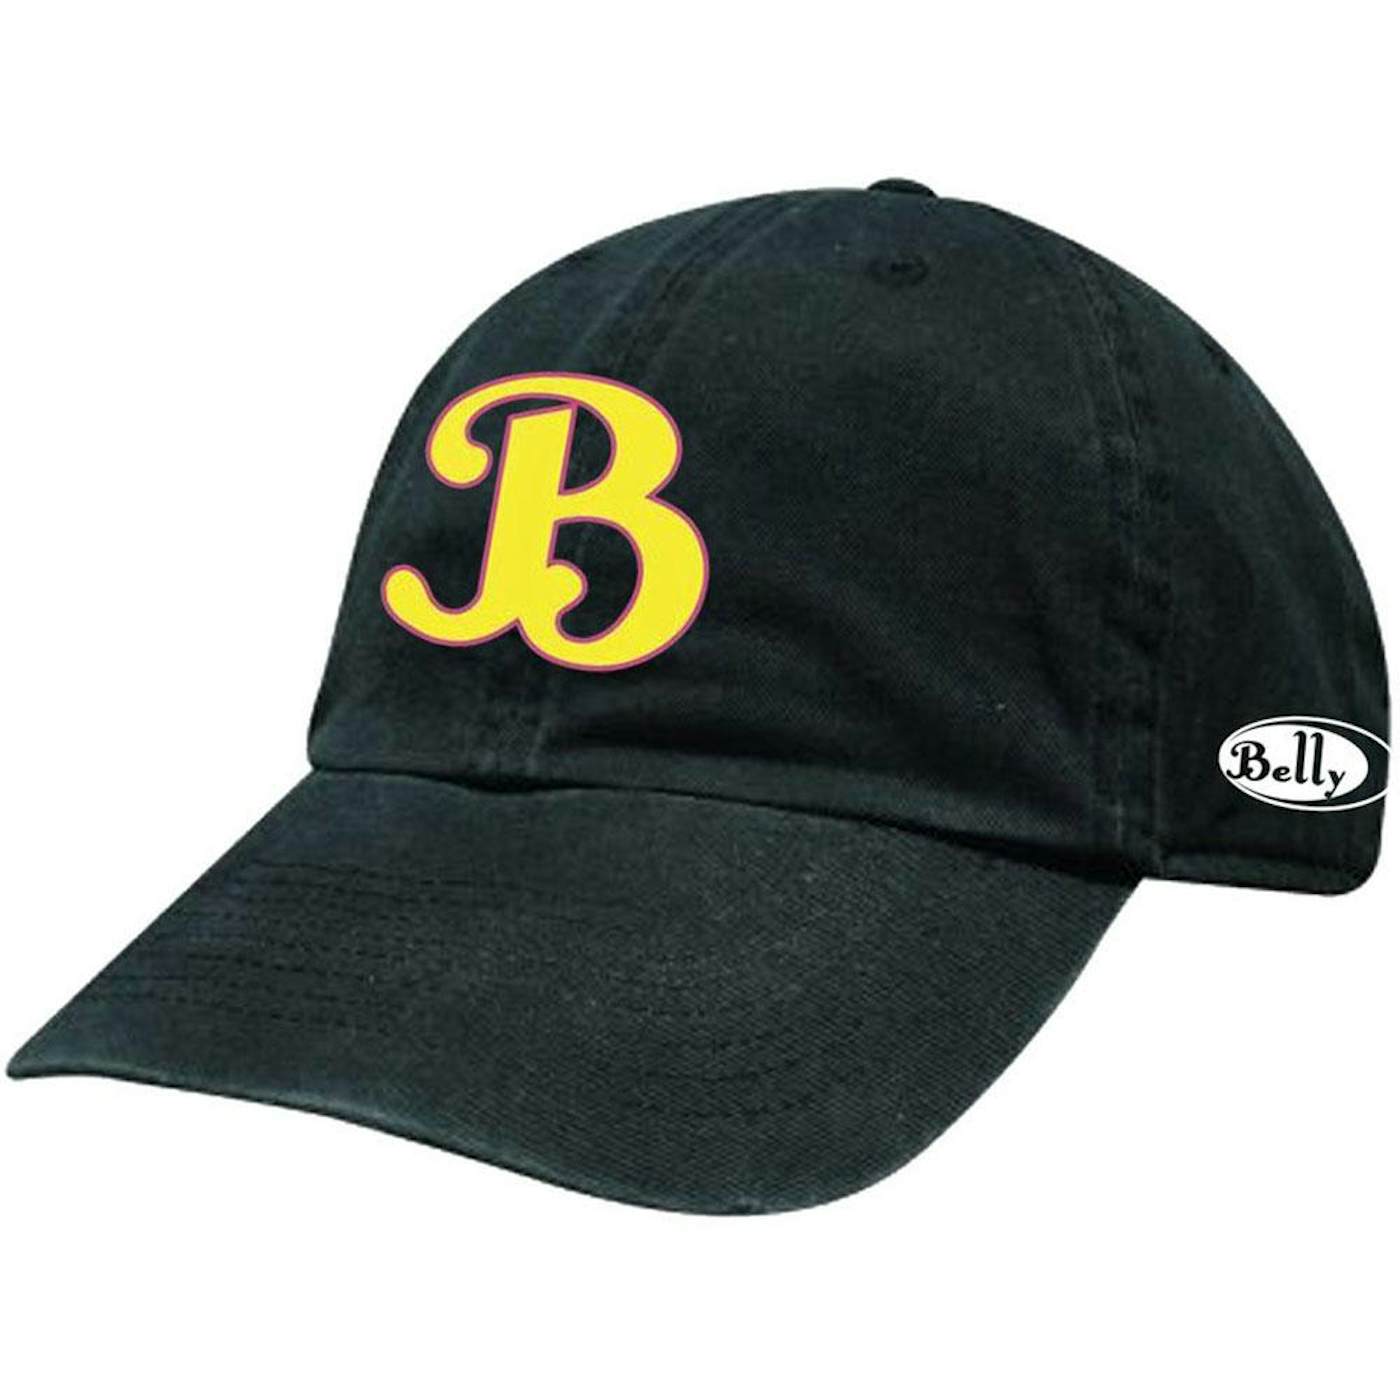 Belly B Logo Ball Cap - Yellow